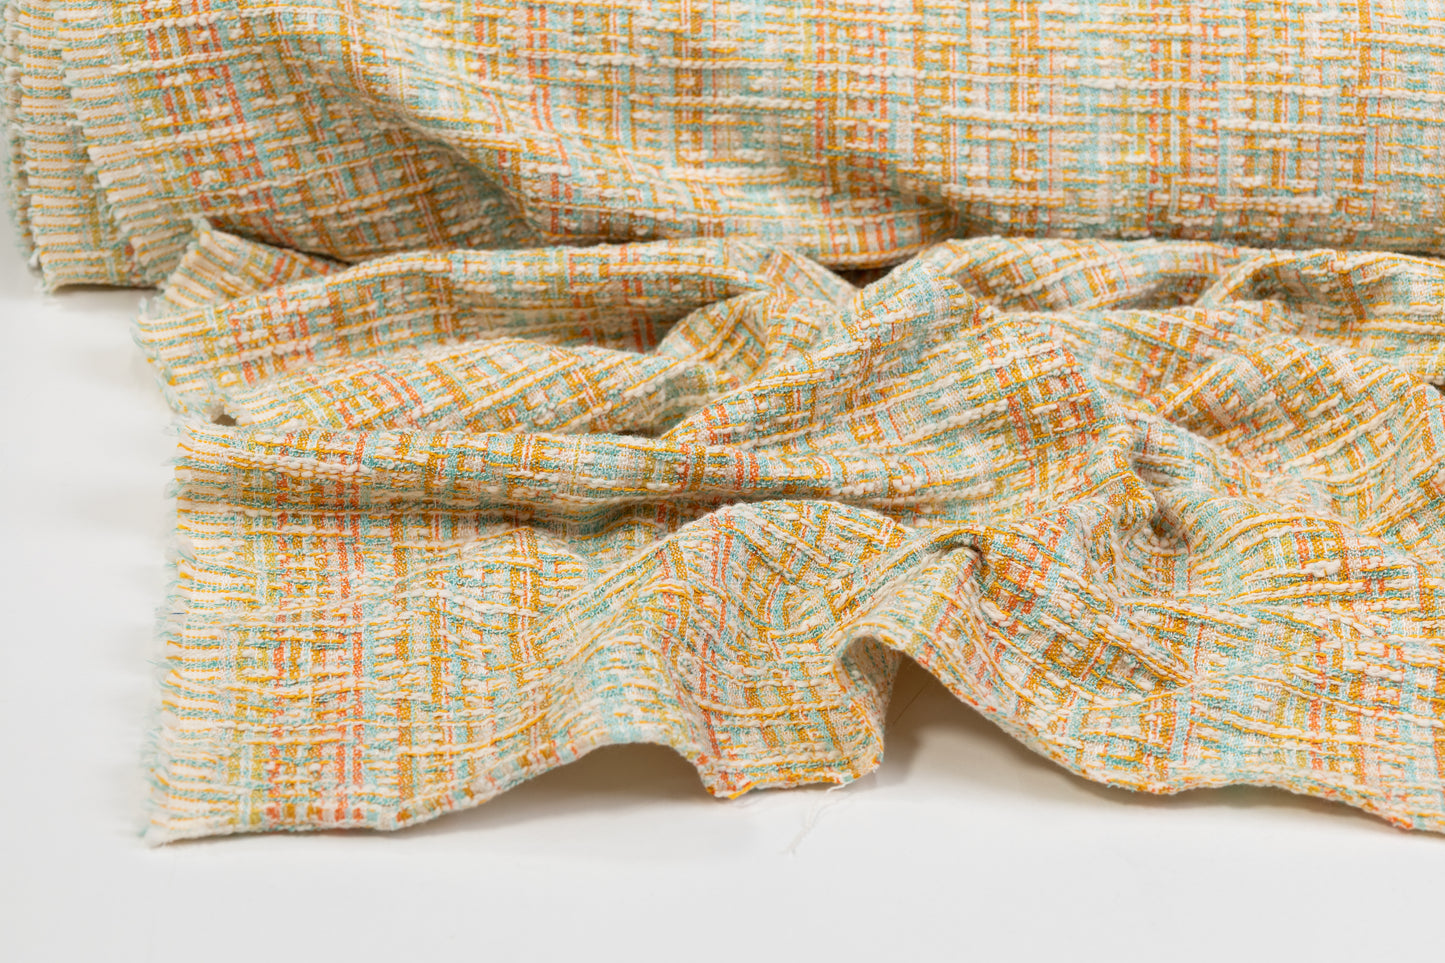 Italian Cotton Viscose Blend Tweed - Multicolor